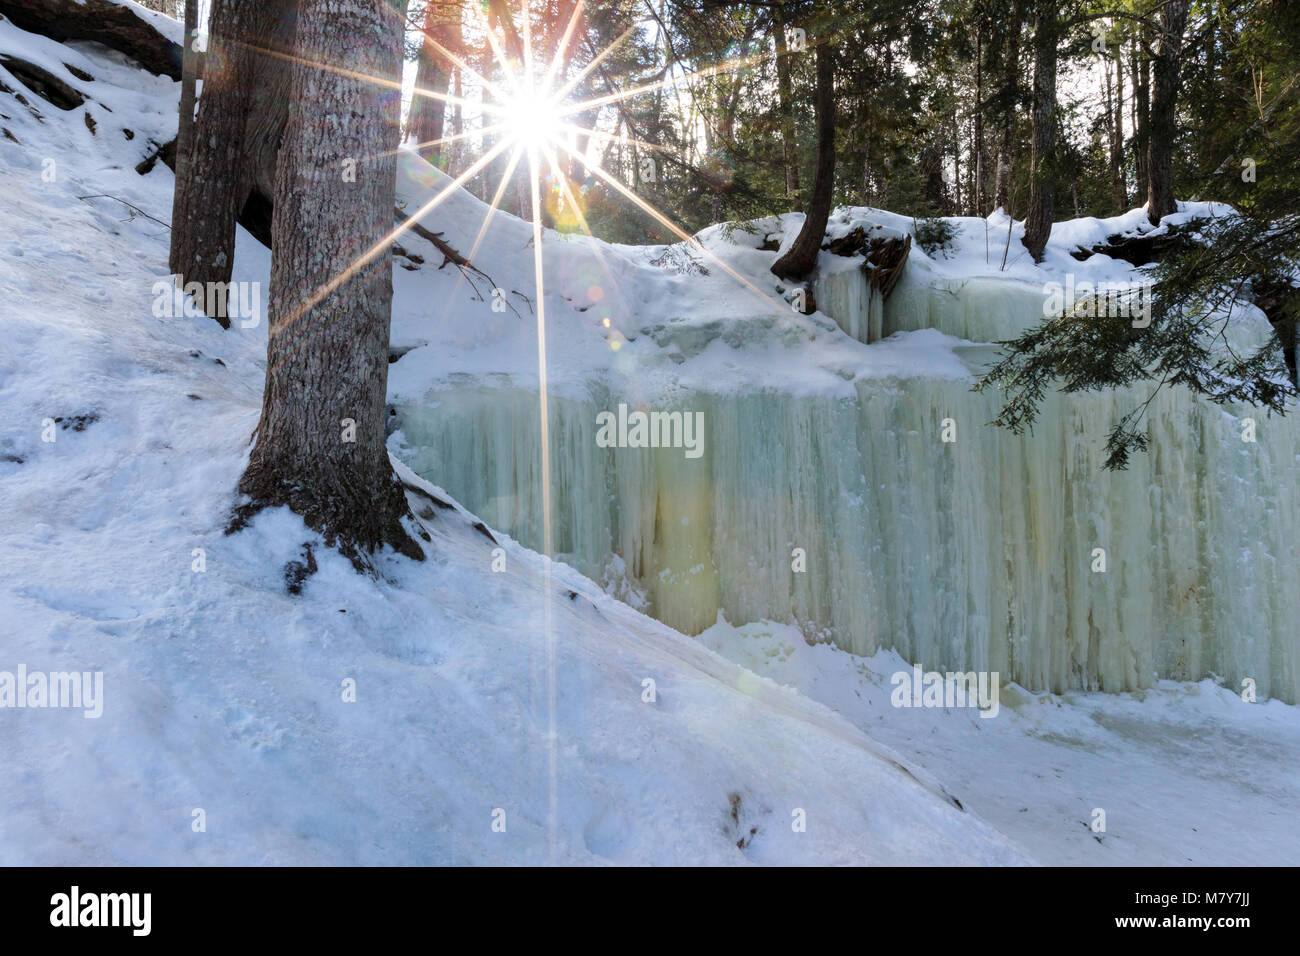 Grottes de glace de Eben dans la Péninsule Supérieure du Michigan déborder sur une saillie rocheuse, comme une cascade, la création de la glace, des rideaux à motifs près de Eben Junction au Michigan. Banque D'Images